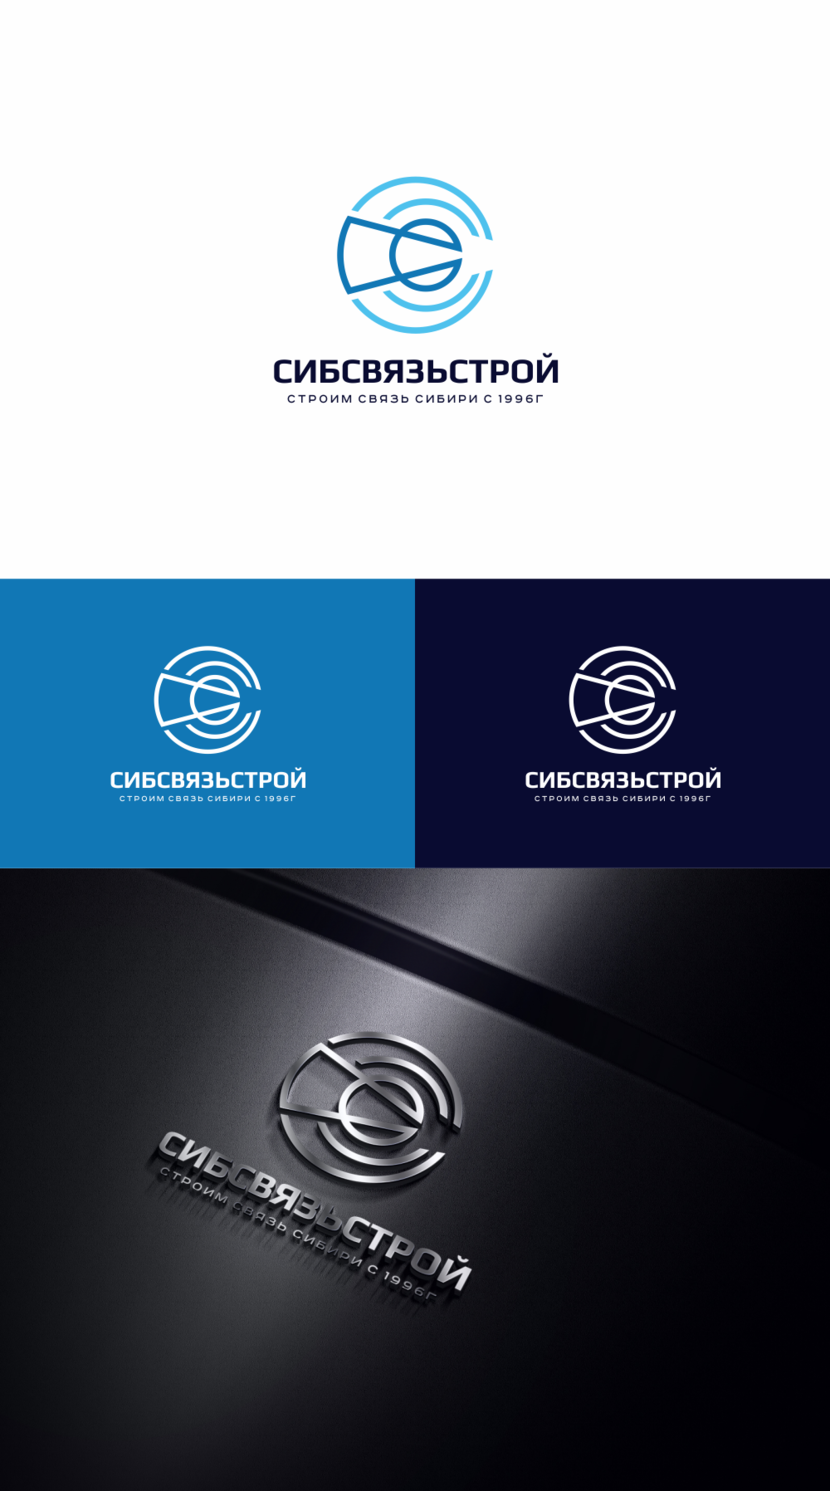   - Разработка или ребрендинг существующего логотипа компании Сибсвязьстрой